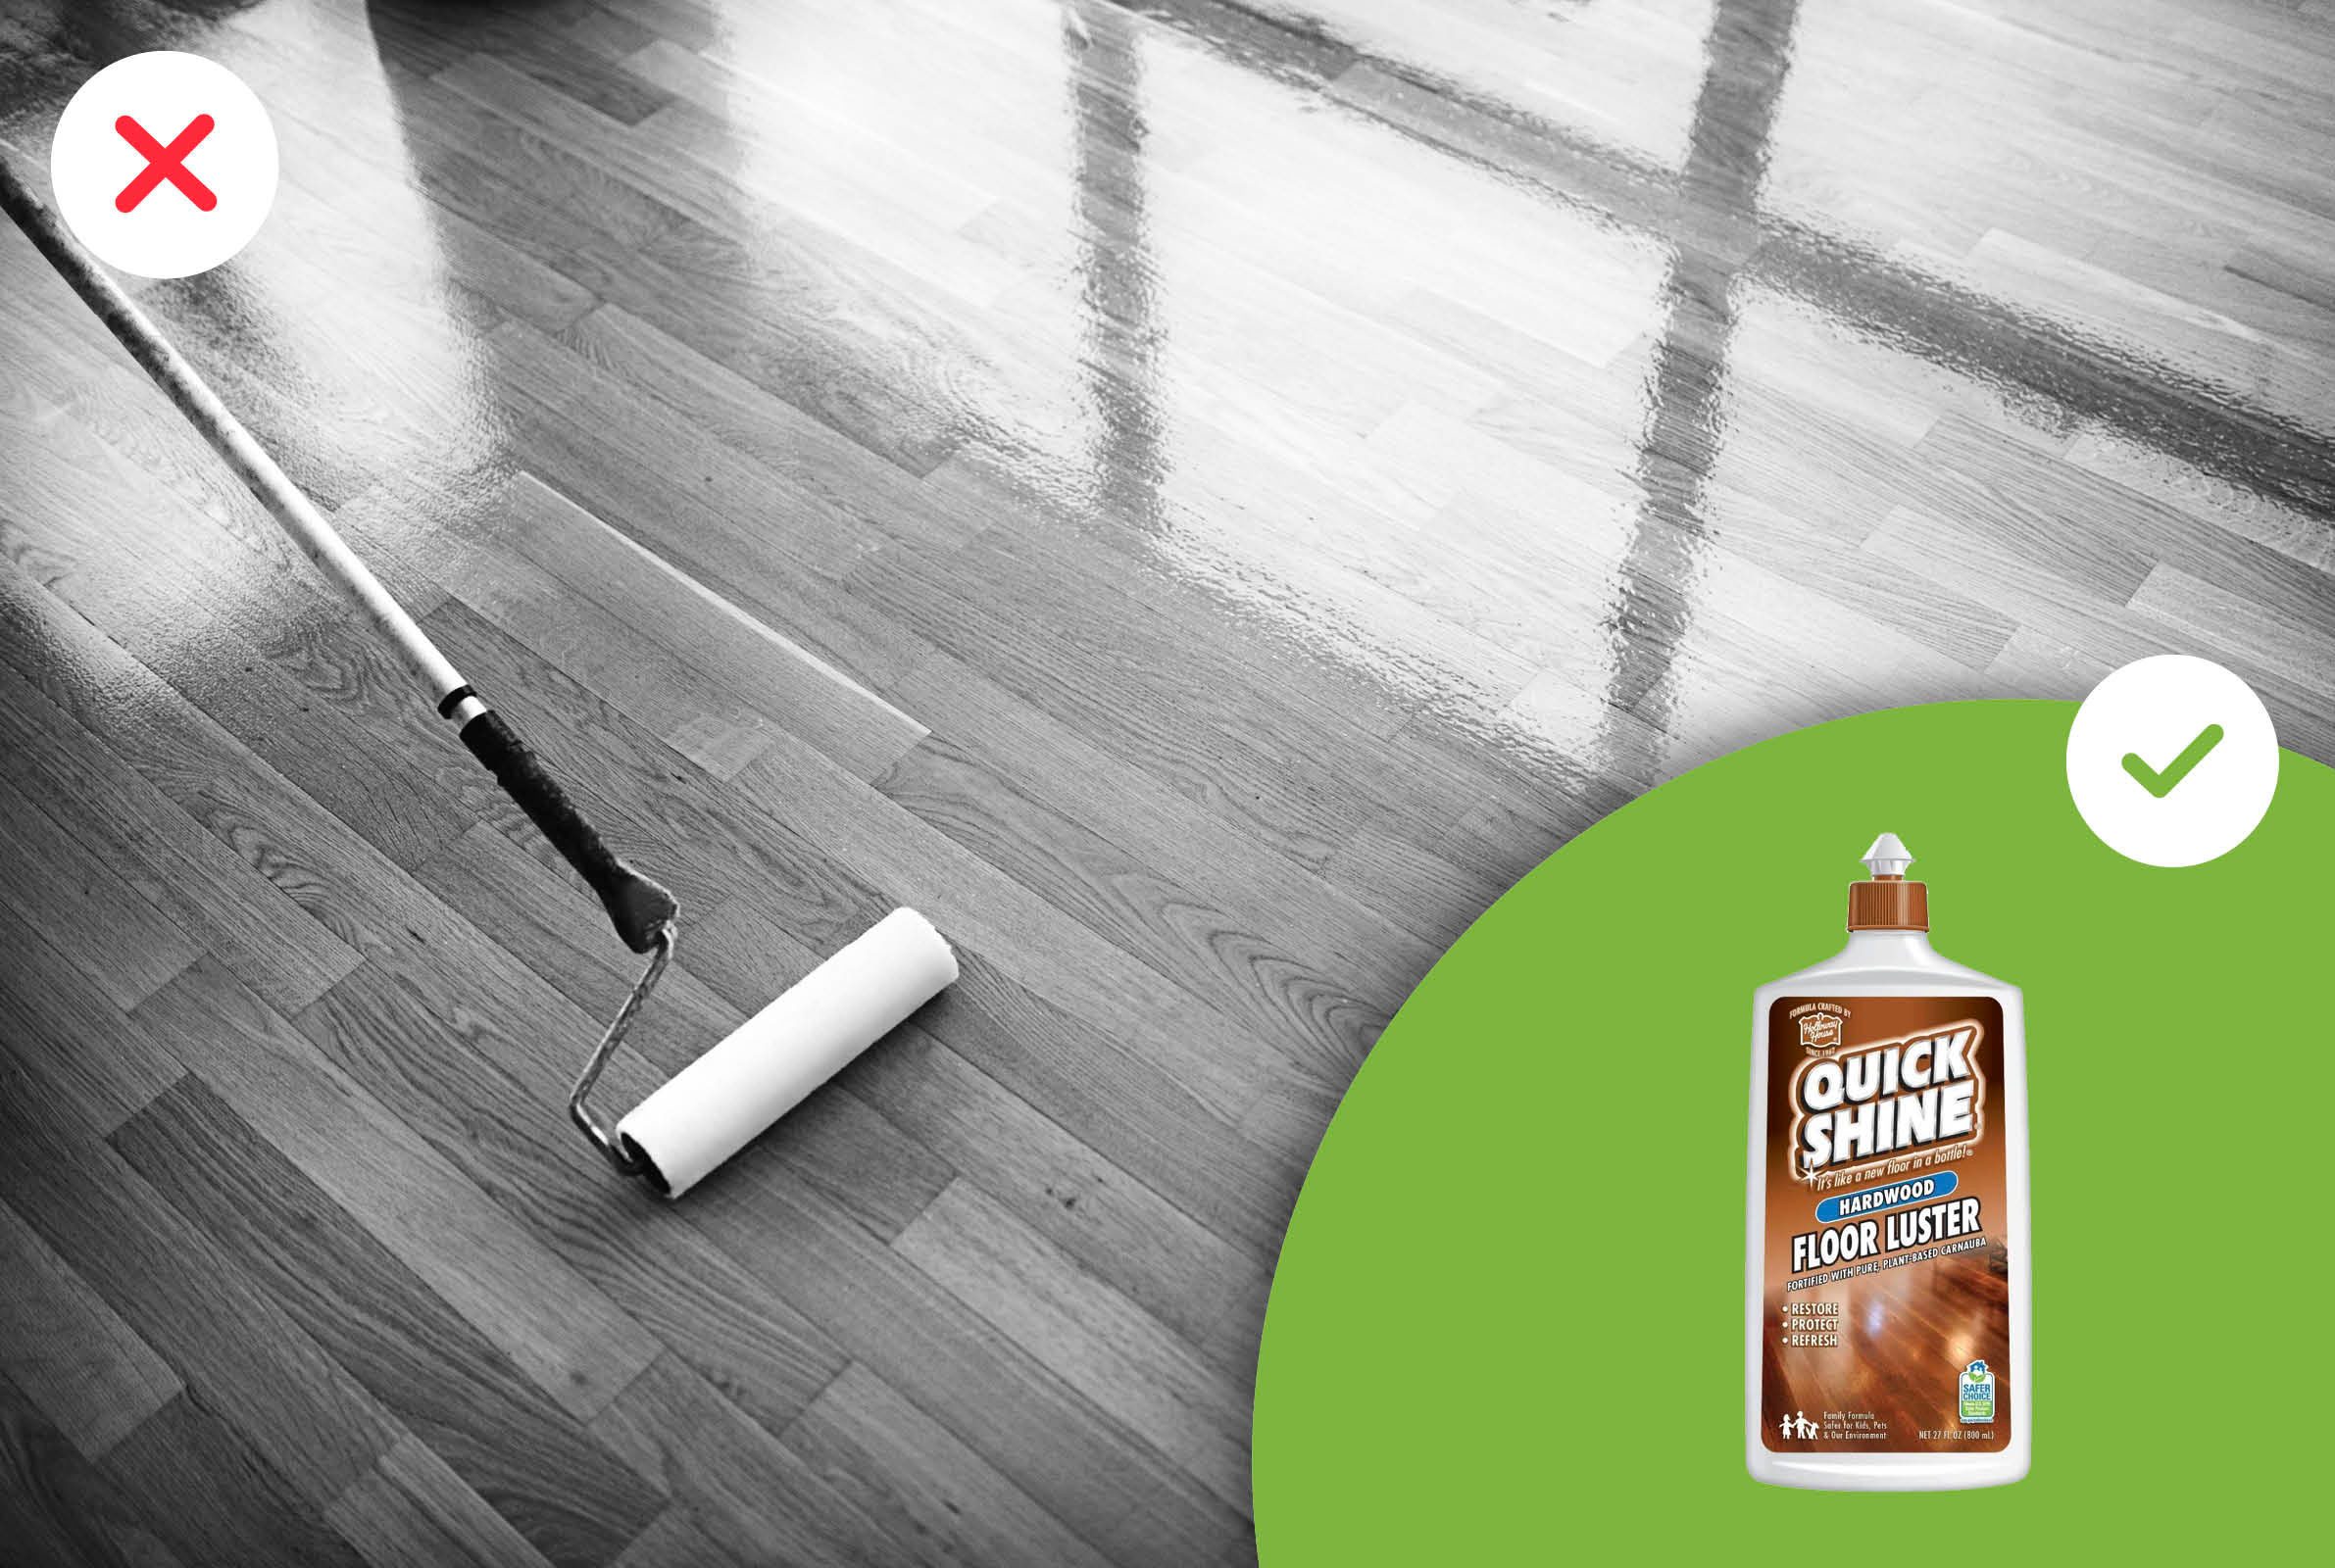 Wood Floors, Safest Cleaner For Hardwood Floors